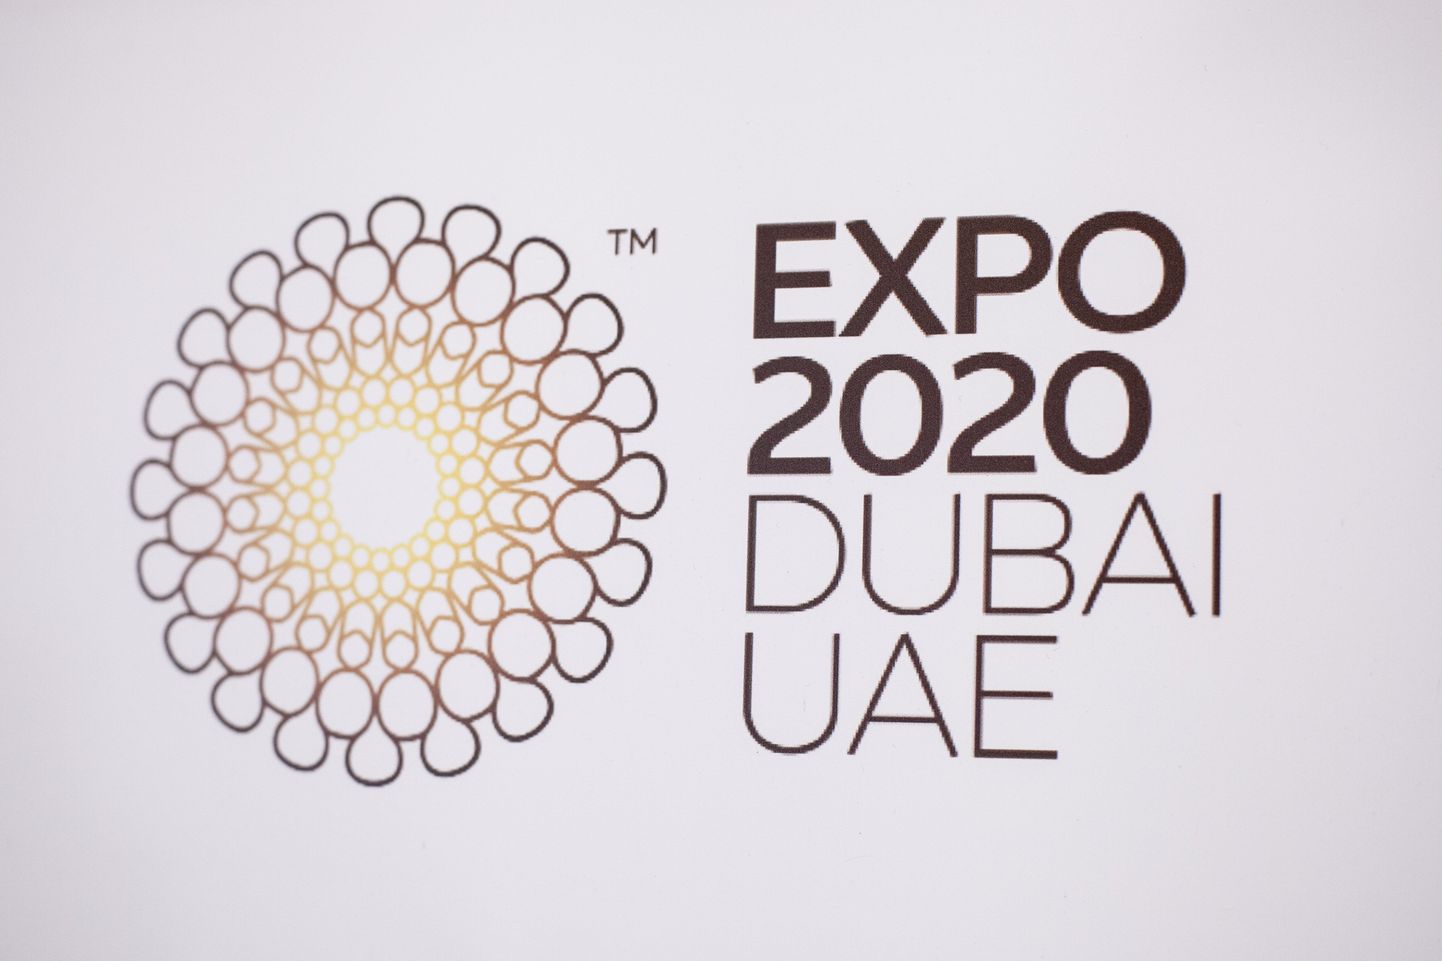 Dubai EXPO.